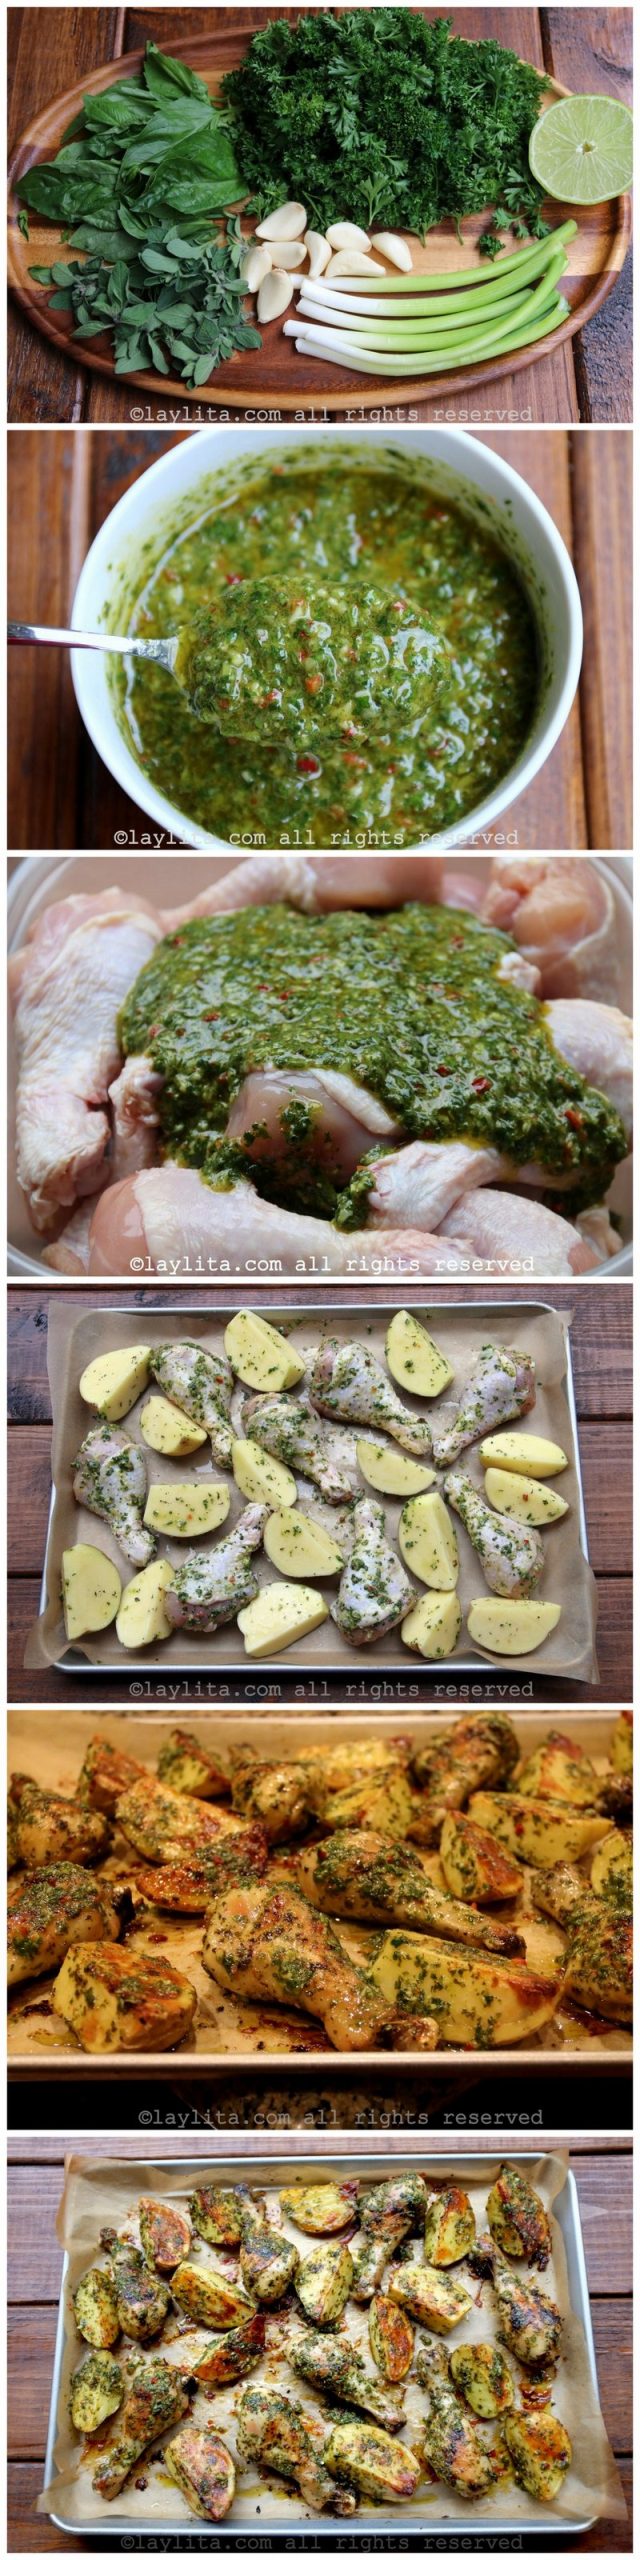 Fotos do preparo de pedaços de frango assados com chimichurri